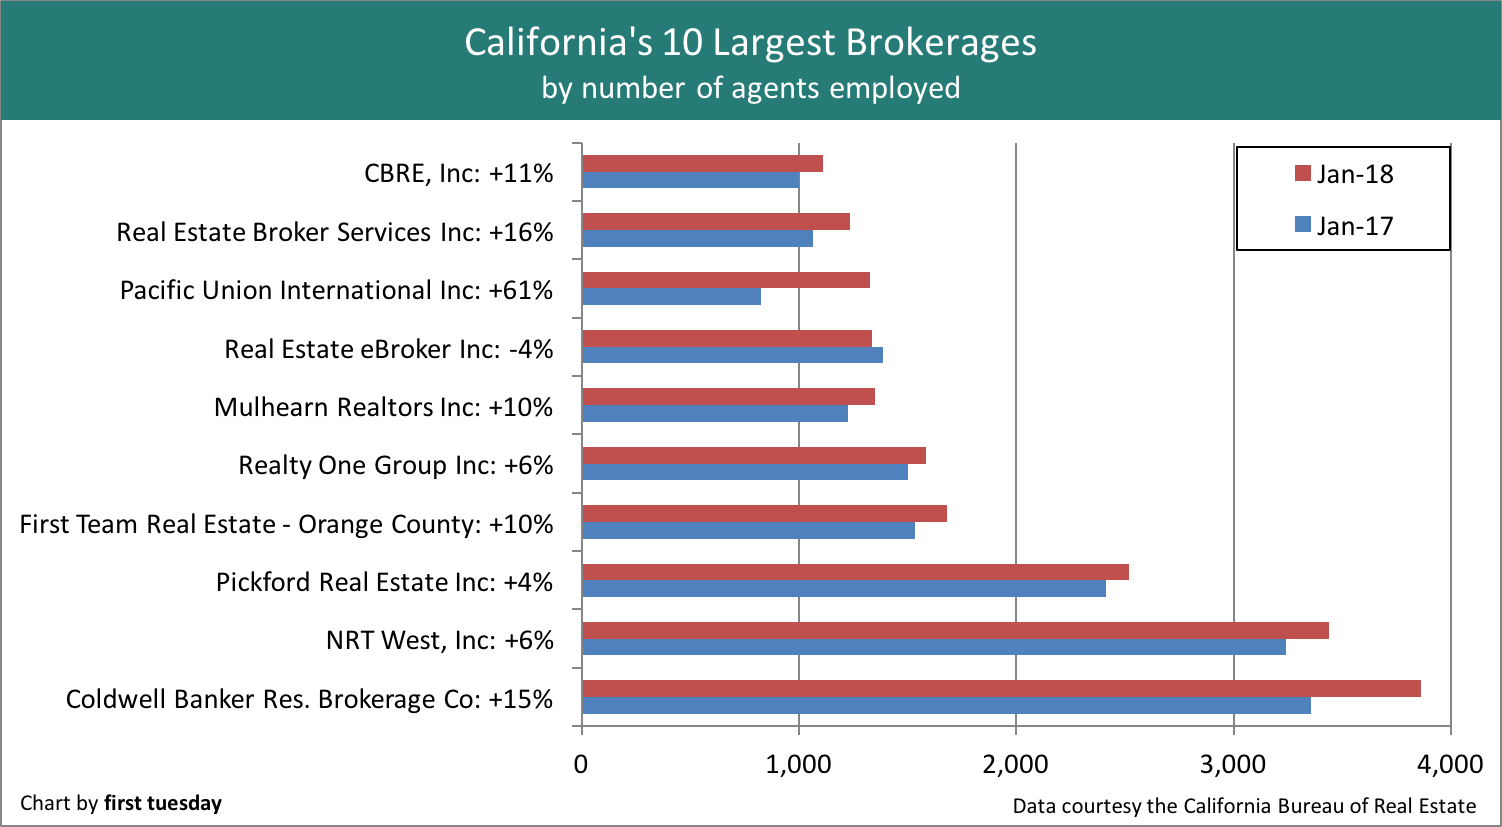 Real Estate Broker Comparison Chart